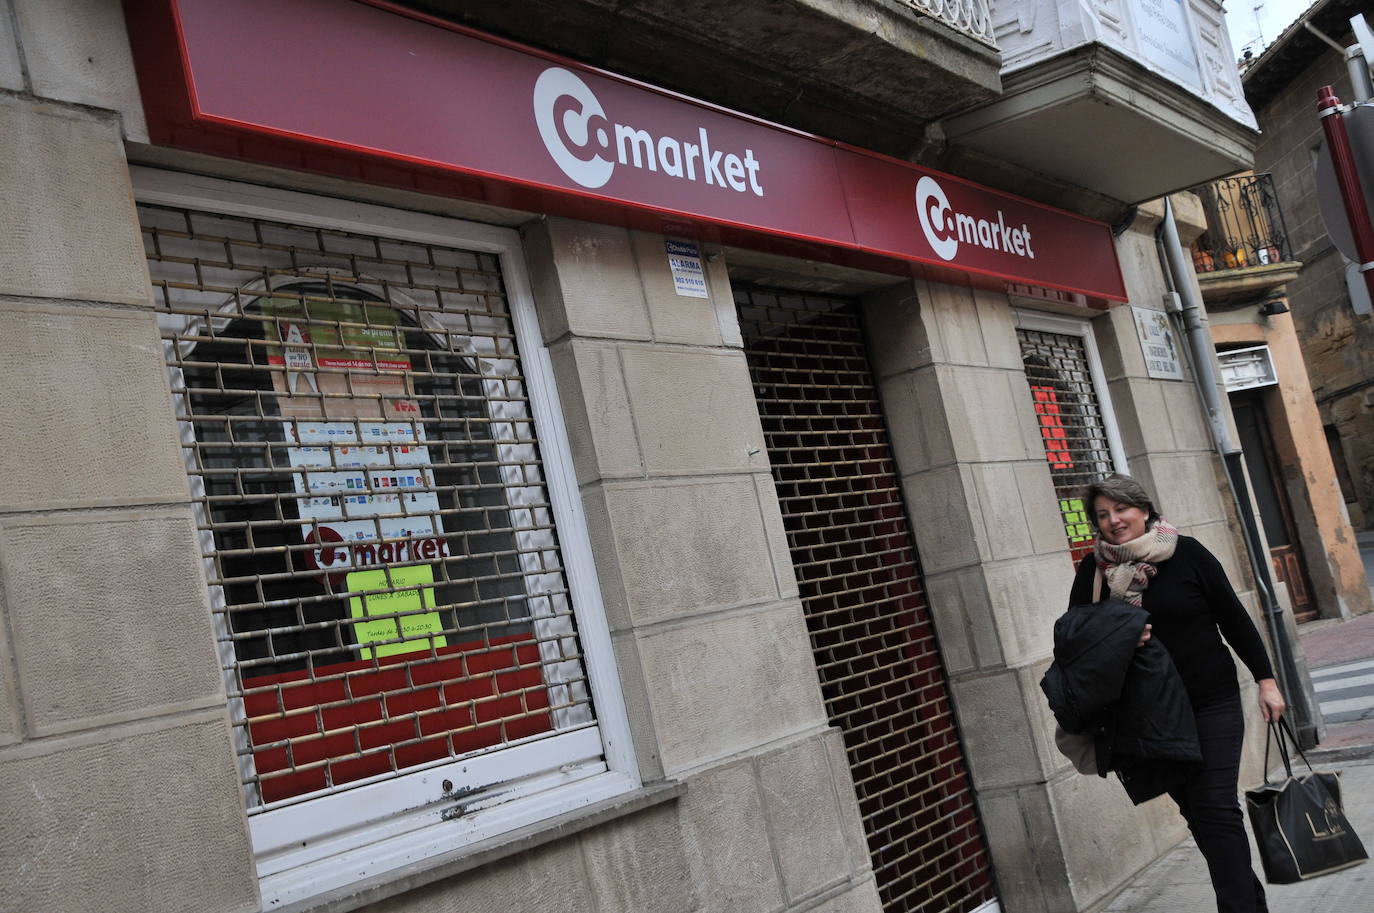 El supermercado de la COFE ha sido gestionado durante los últimos años, y en alquiler, por la firma aragonesa Comarket.